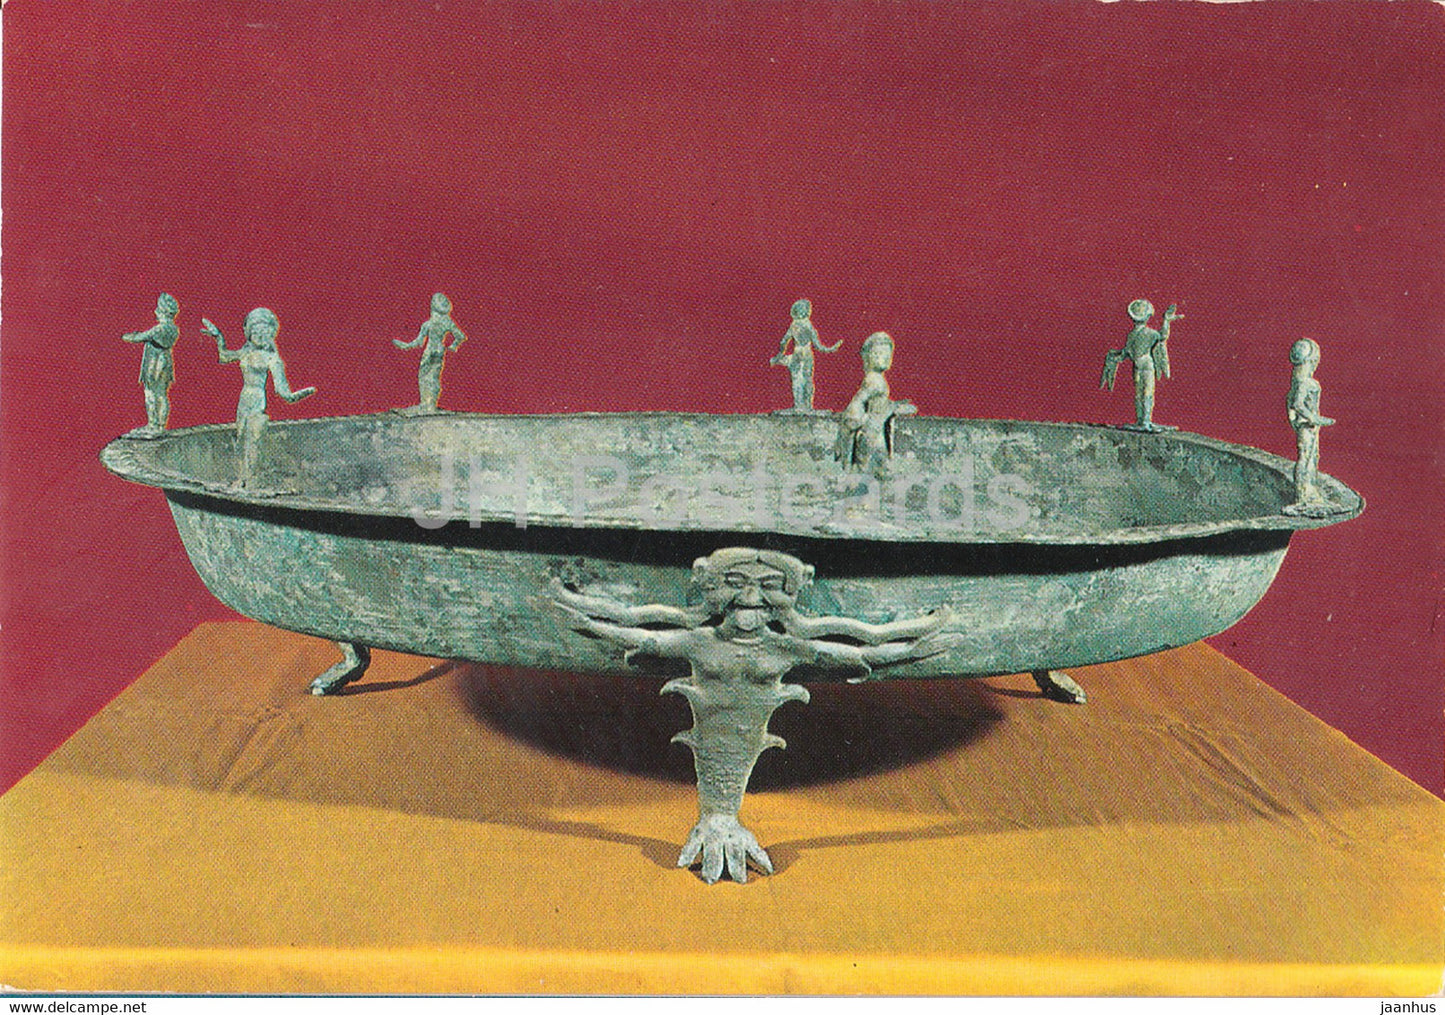 Museo Etrusco - Chiusi - Bronze Cup - Etruscan Museum - ancient art - Italy - Italia - unused - JH Postcards